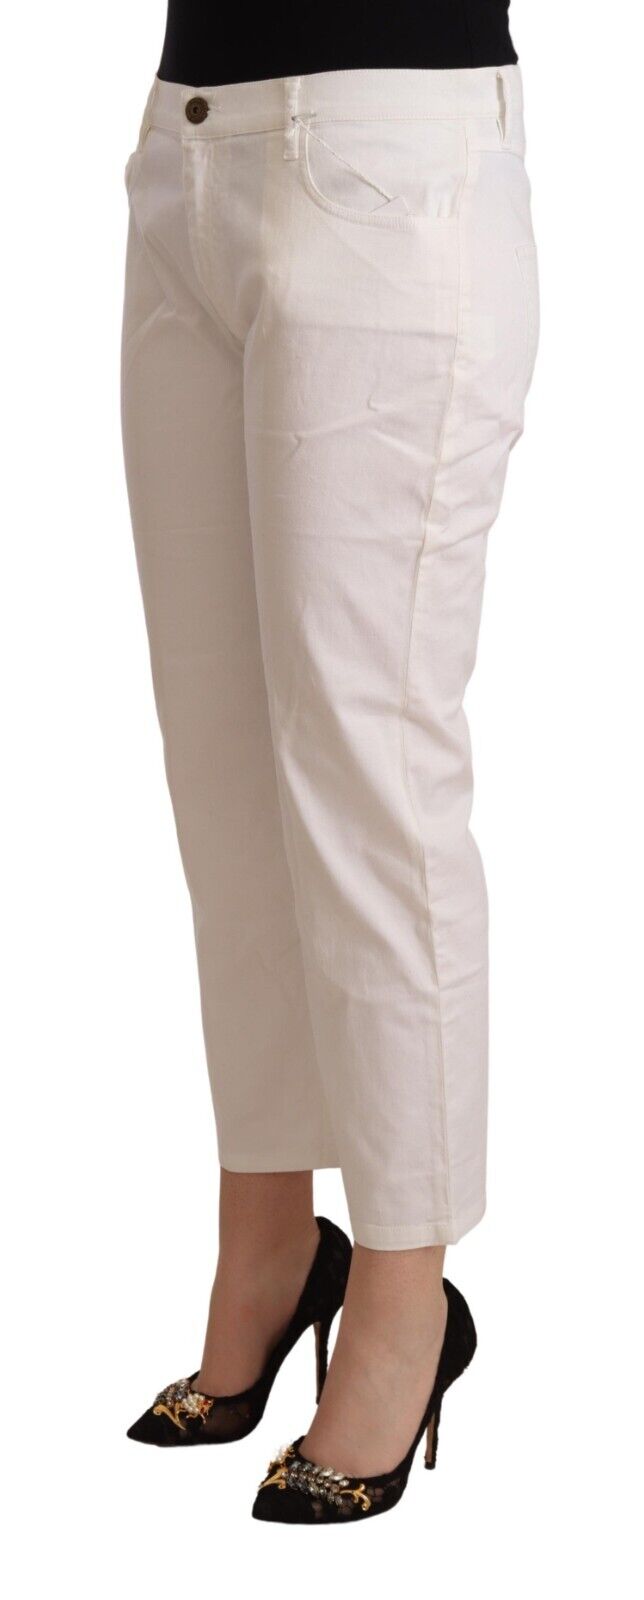 L'Autre Chose White Cotton Mid Waist Cropped Denim Jeans - Fizigo